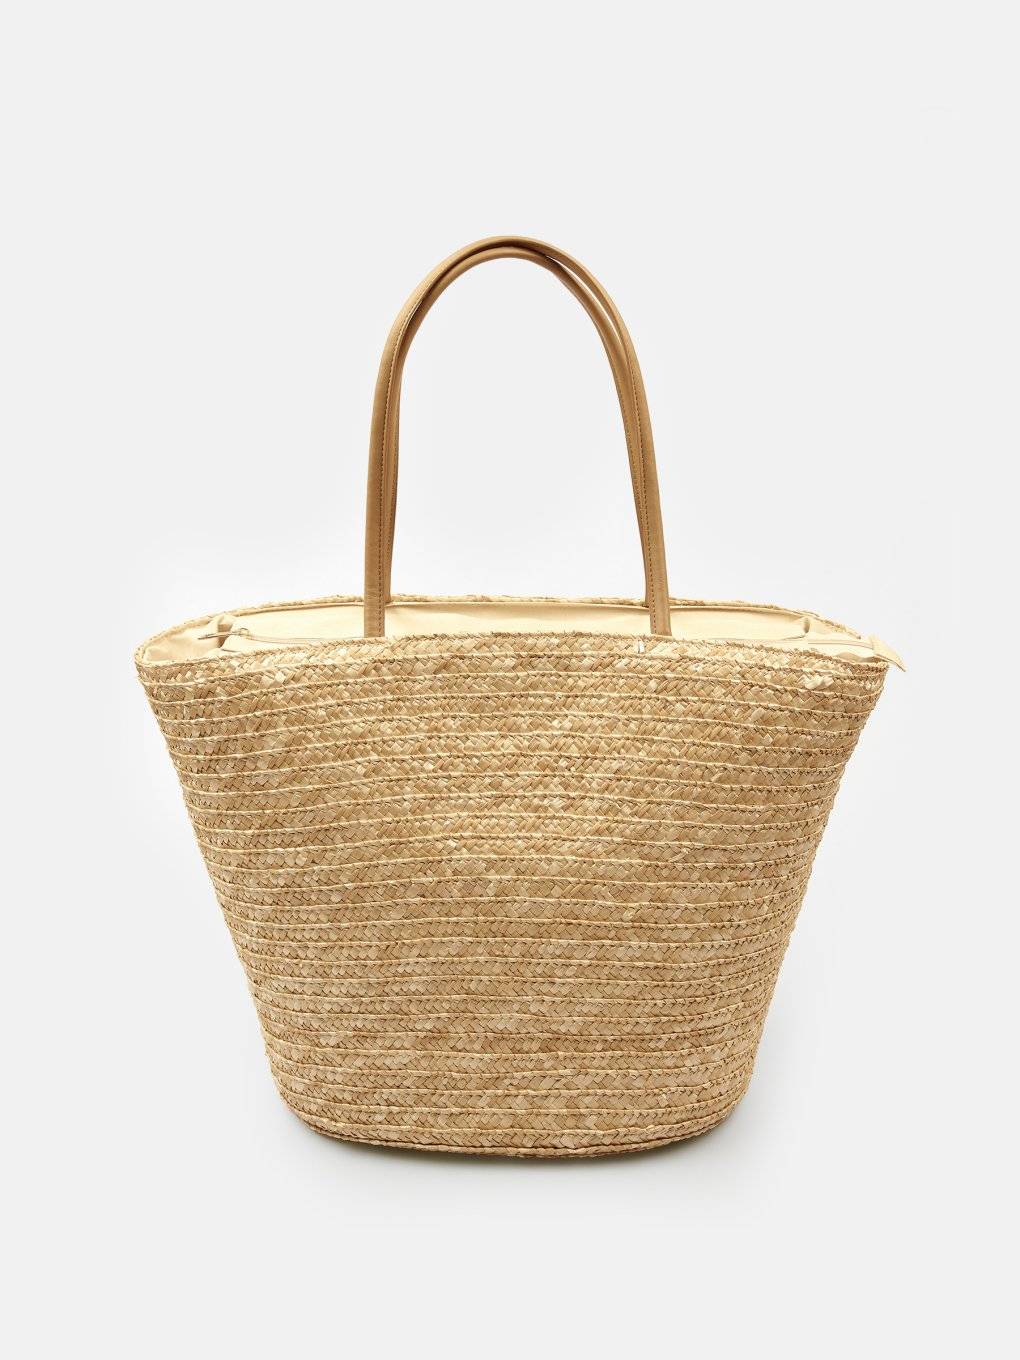 Big straw beach bag